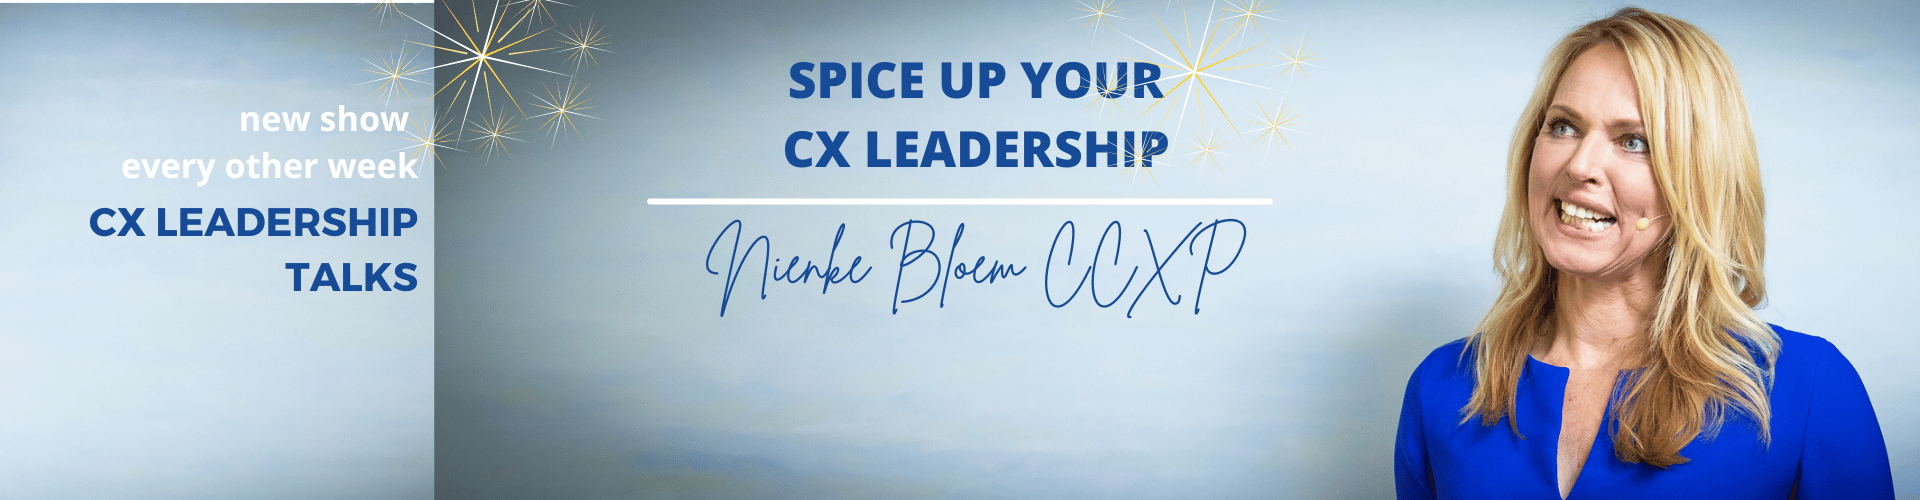 CX Leadership Talks